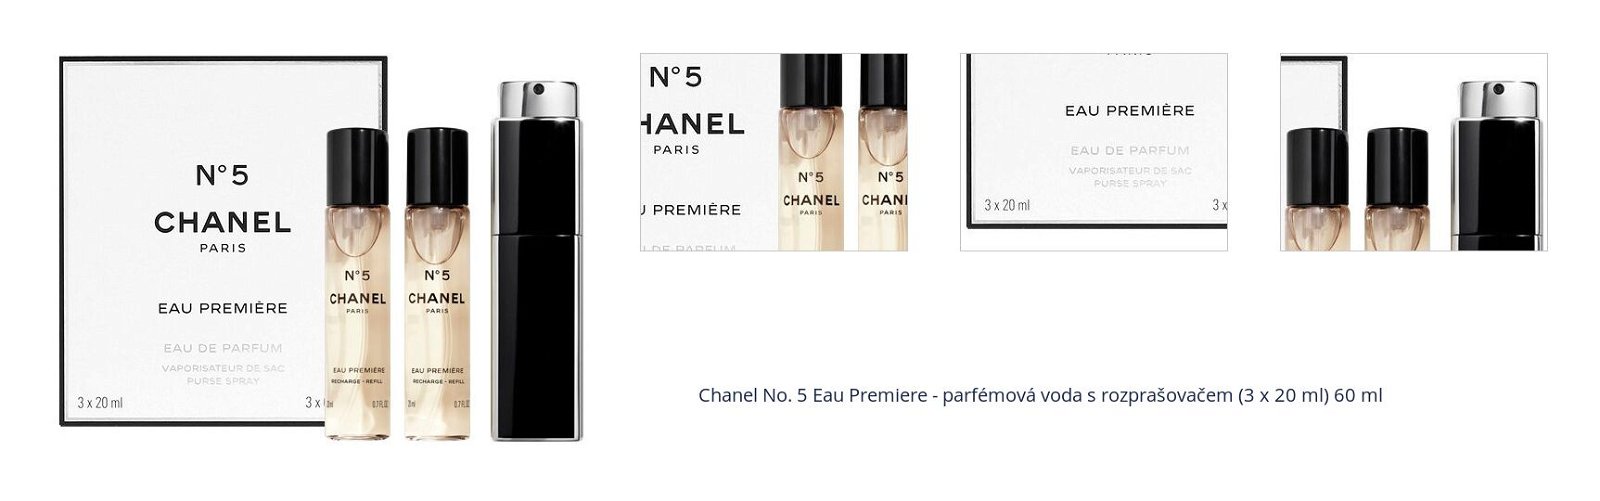 Chanel No. 5 Eau Premiere - parfémová voda s rozprašovačem (3 x 20 ml) 60 ml 1